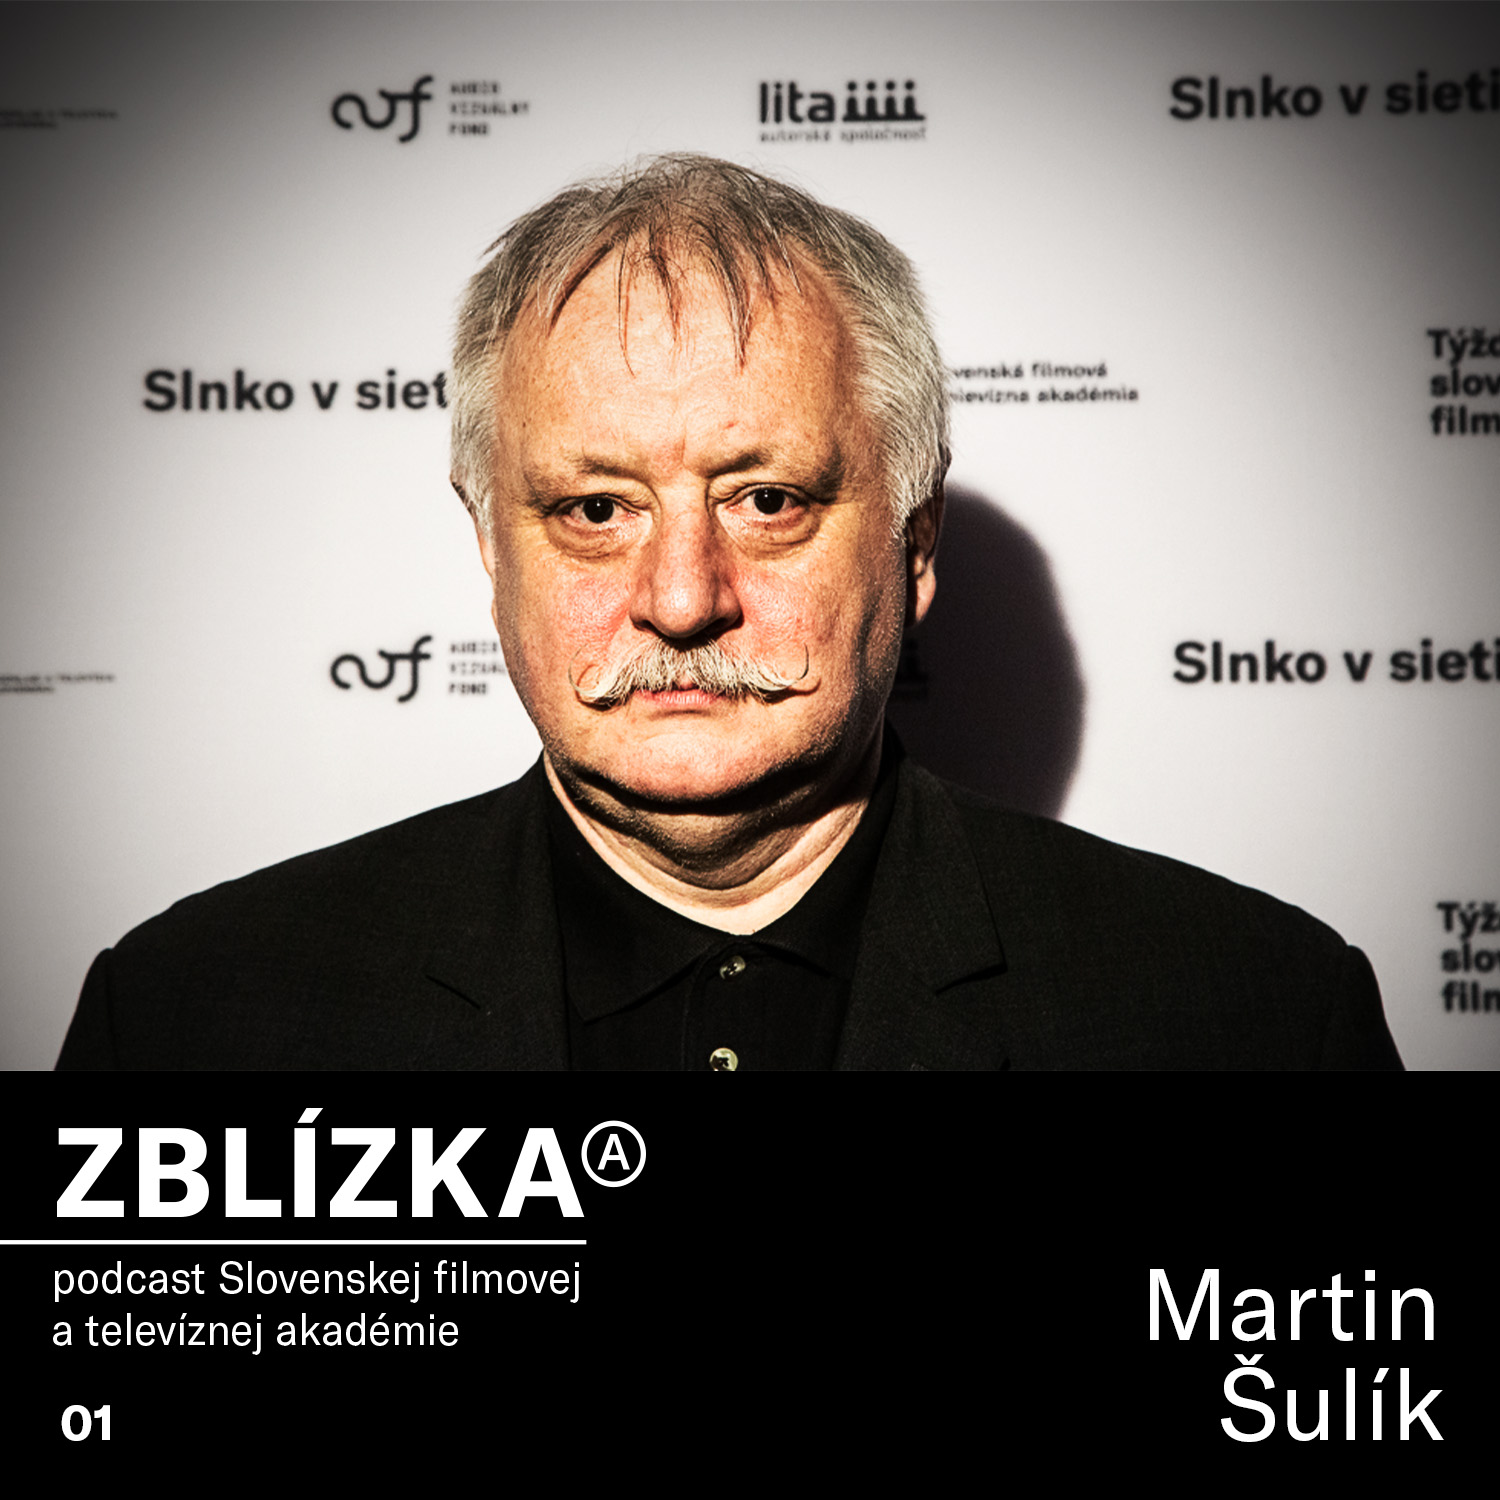 Martin Šulík: Rodičia robili všetko pre to, aby som neskončil pri filme